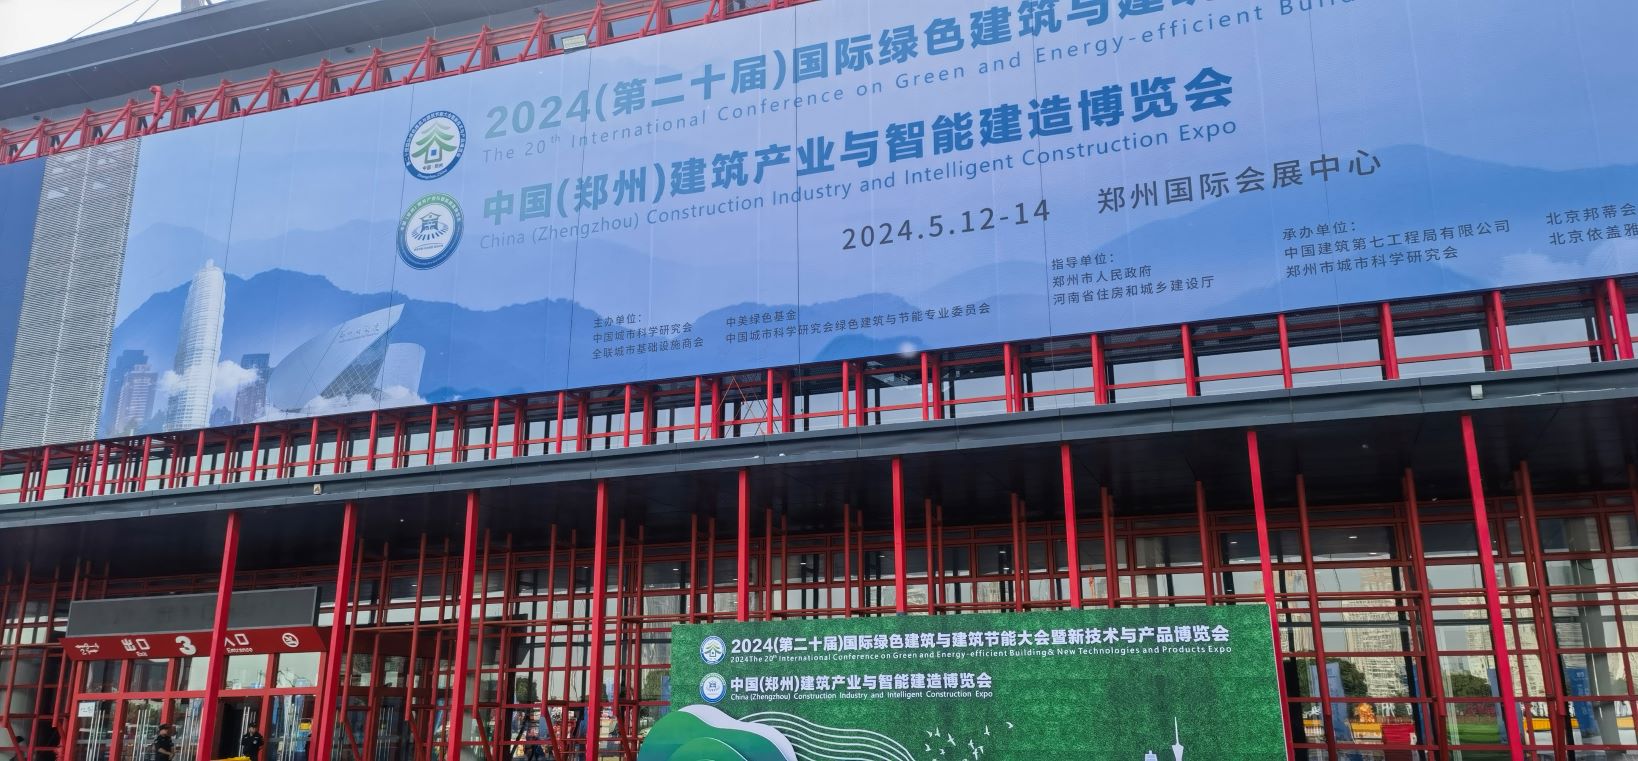 郑州国际会展中心高支模、基坑设备展示